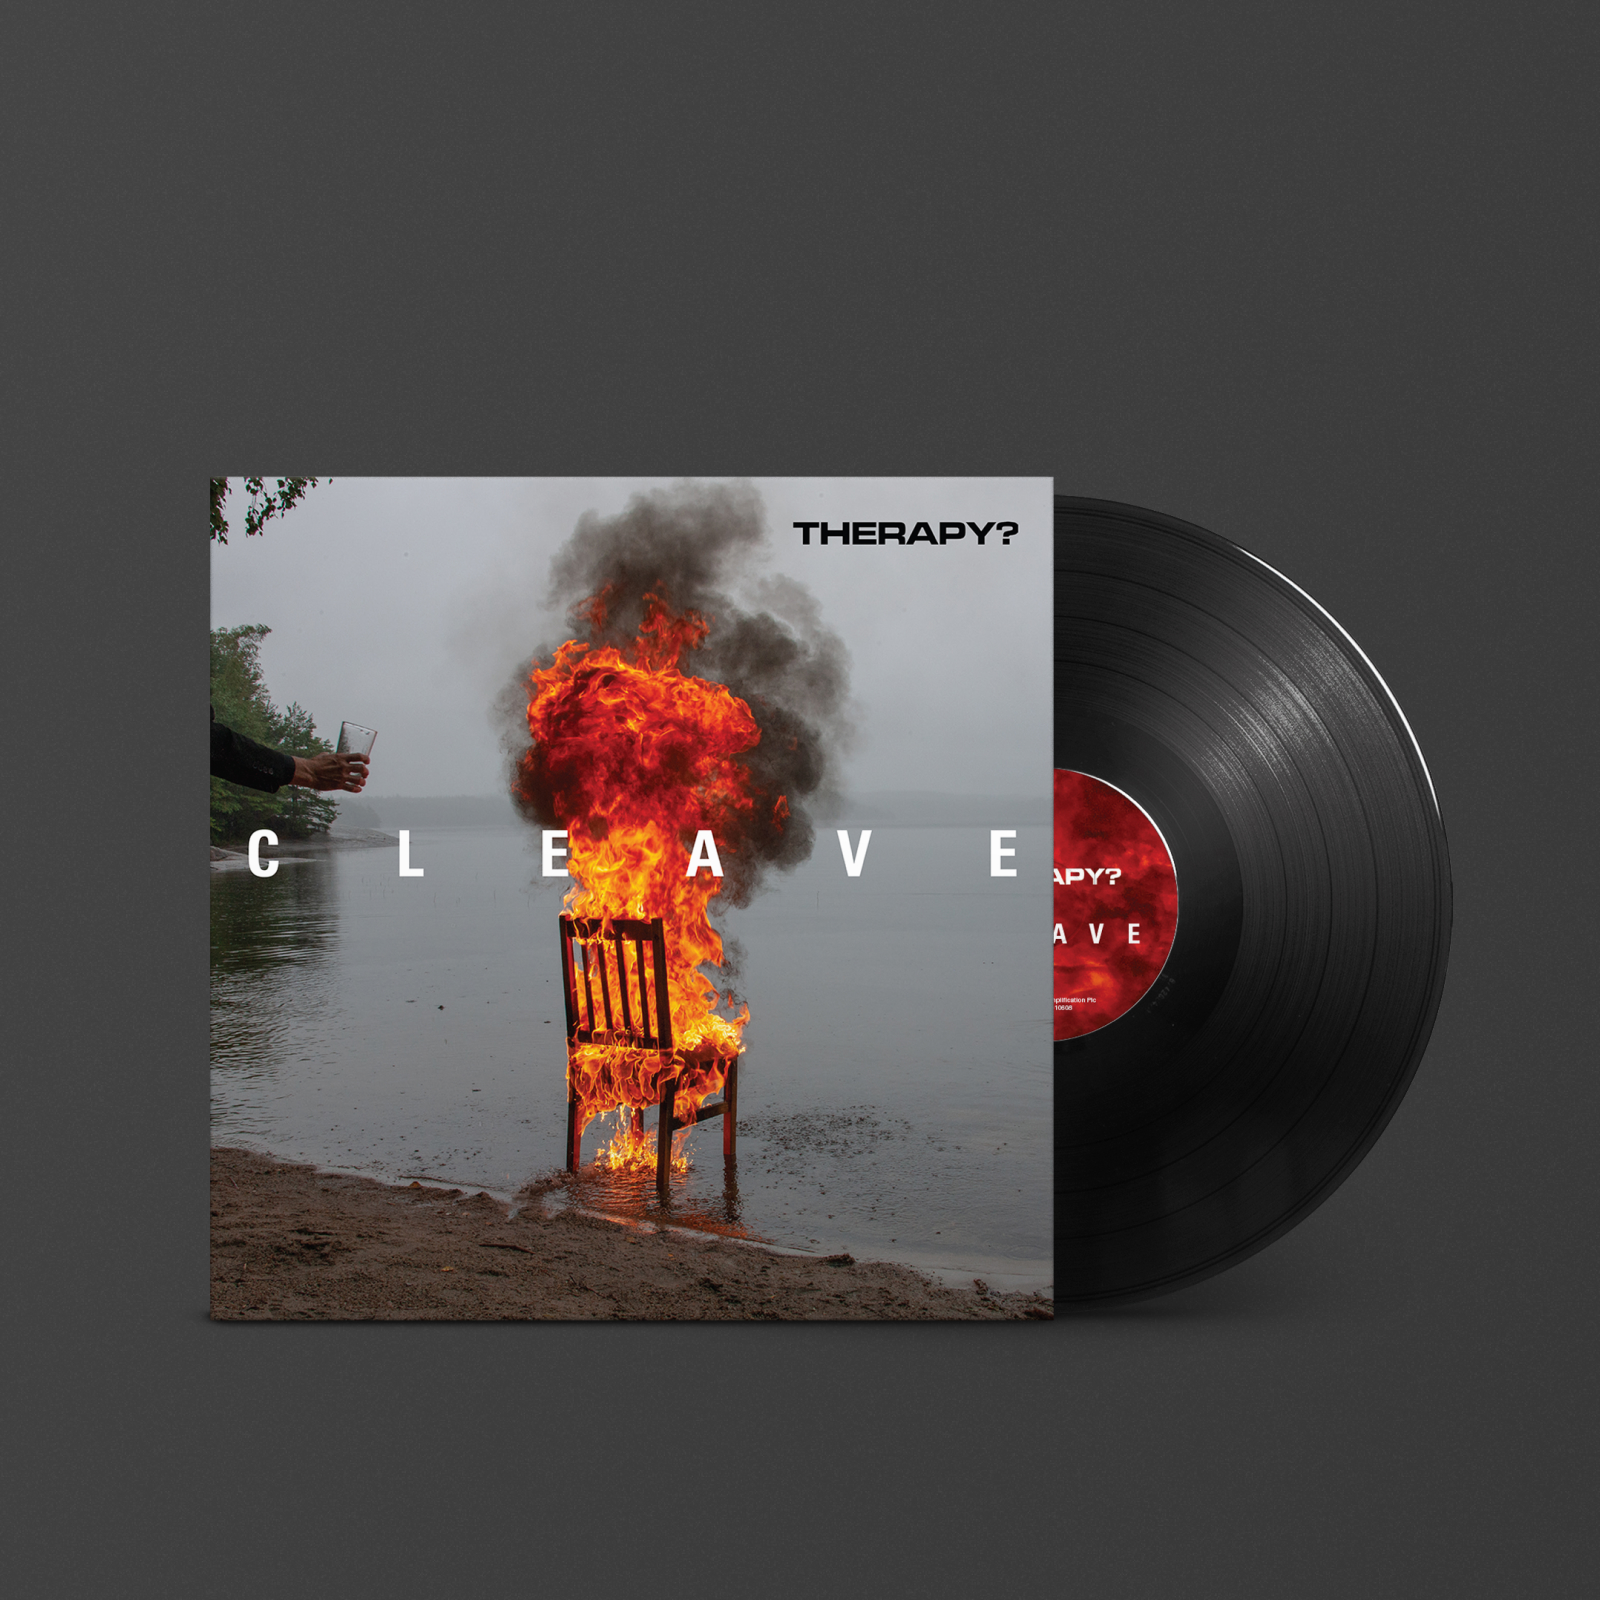 Das Vinyl-Cover der Cleave Therapy LP von Marshall.